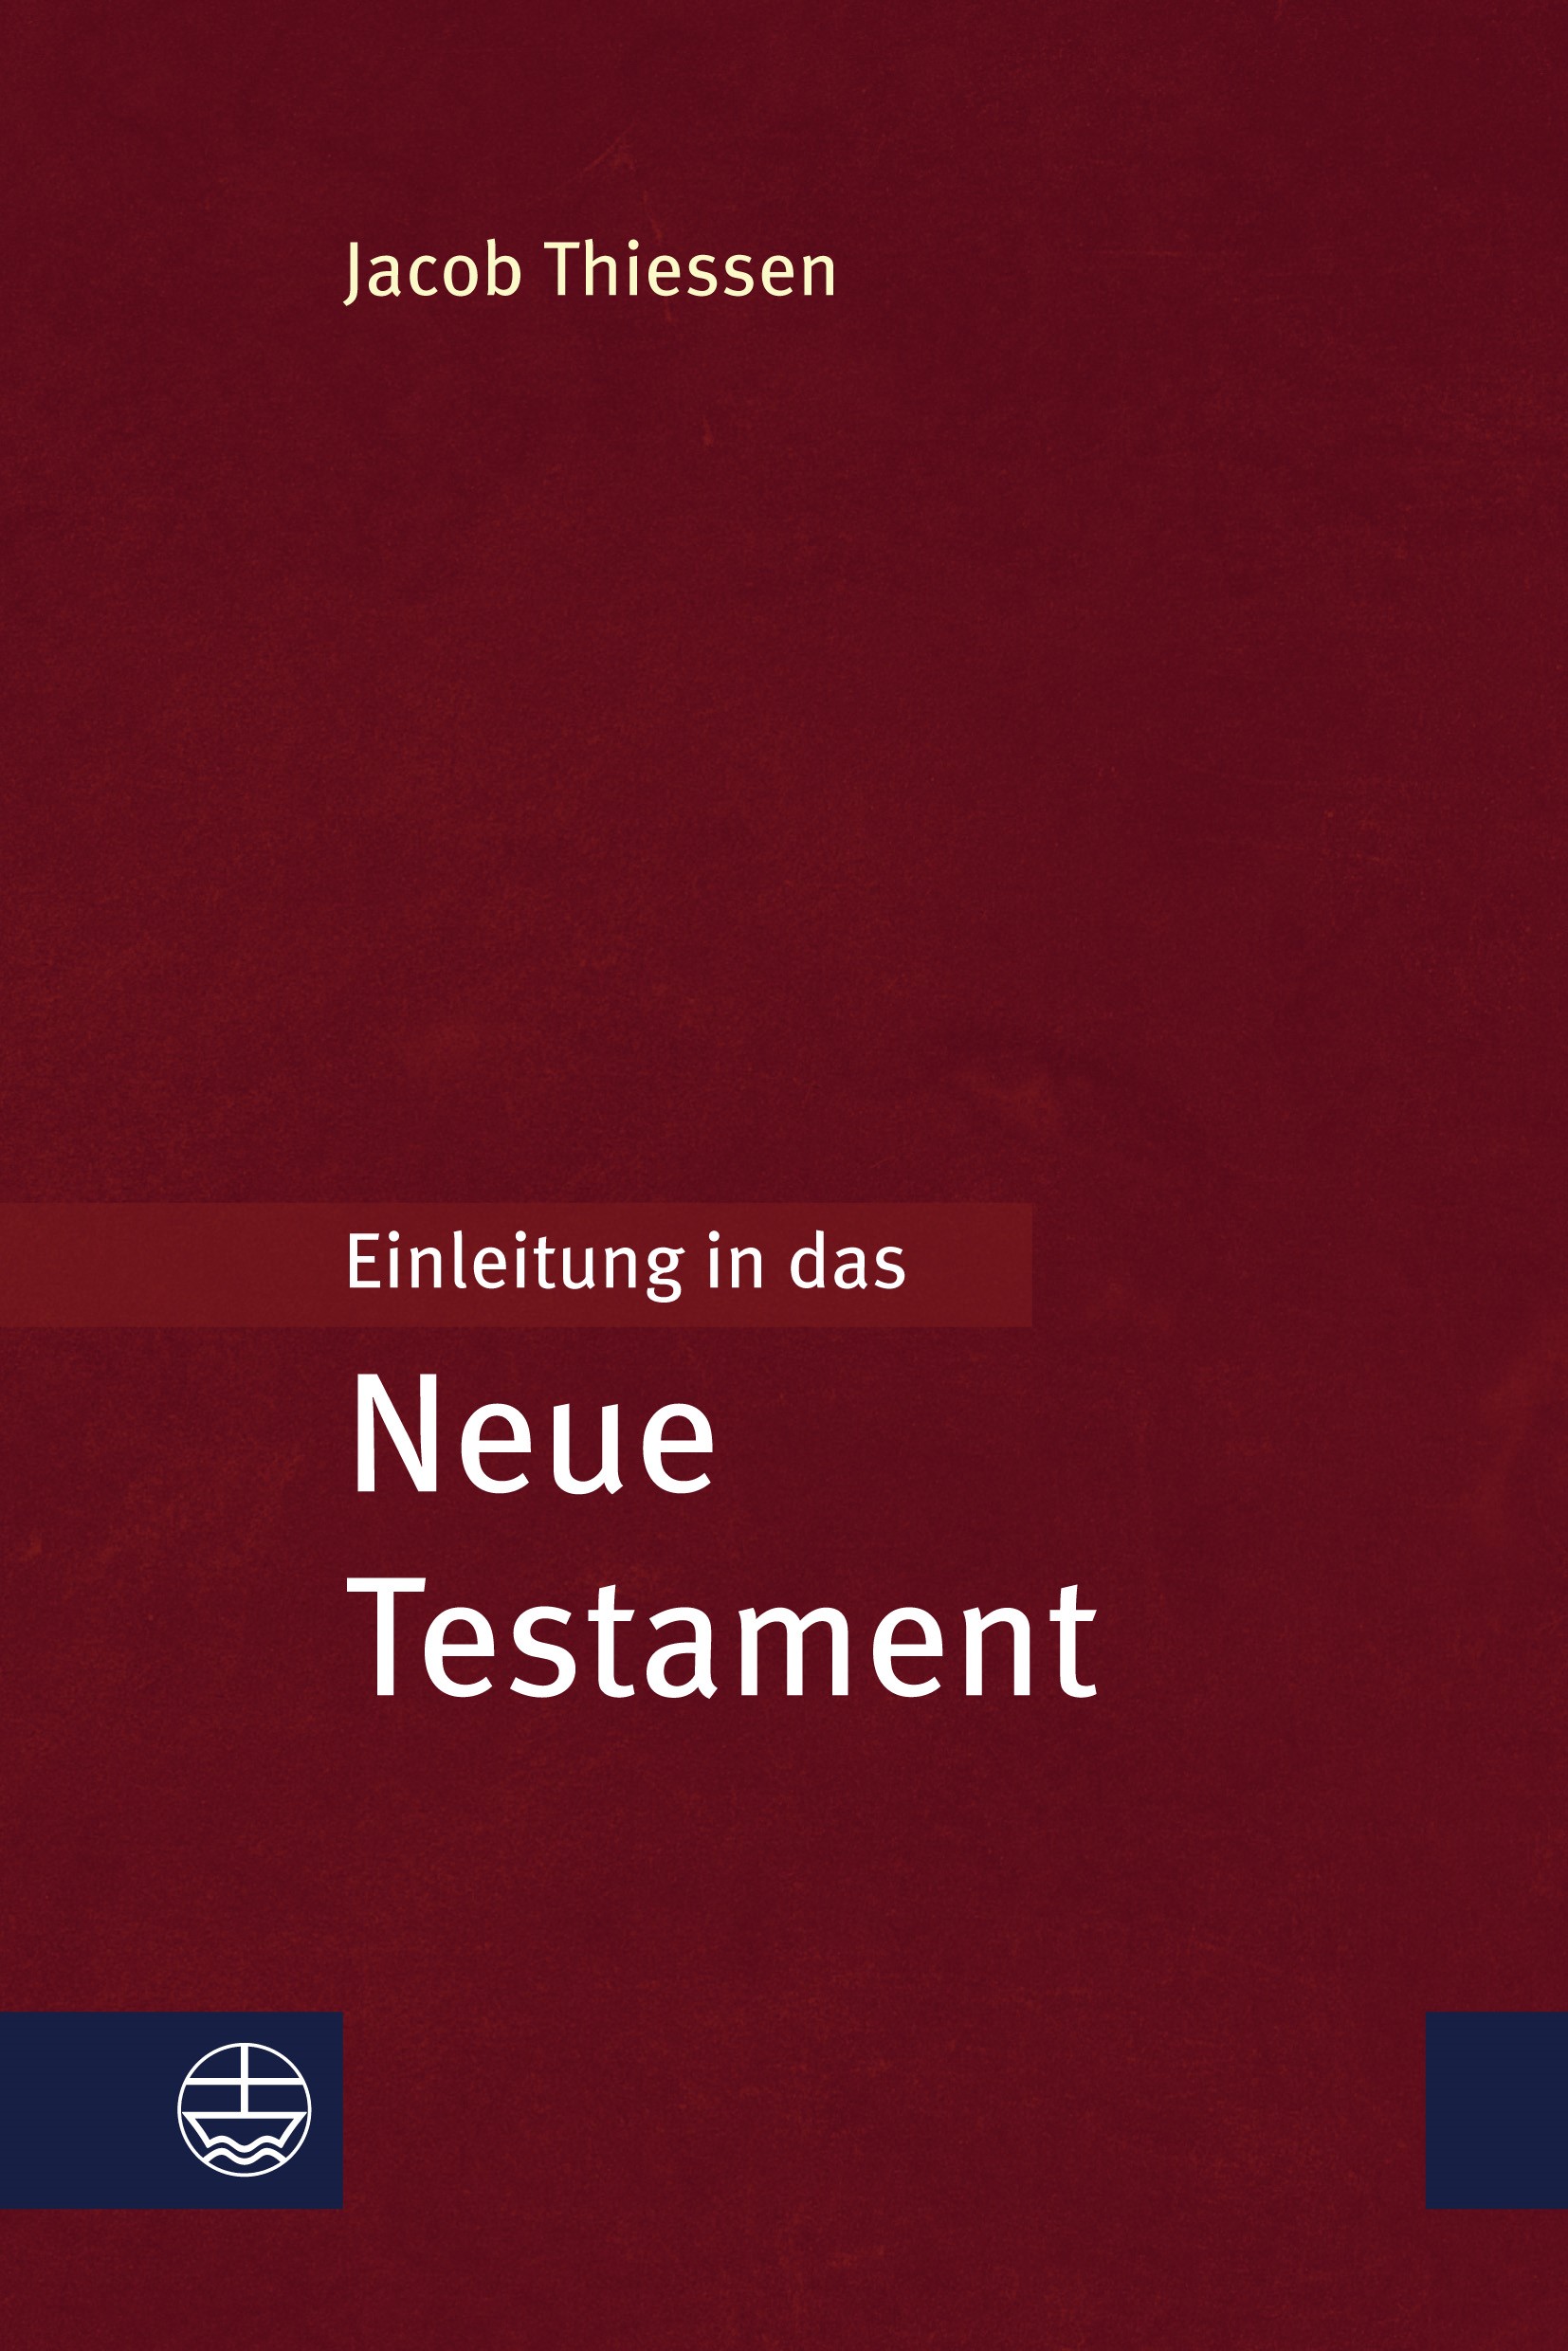 Jacob Thiessen: “Einleitung in das Neue  Testament”